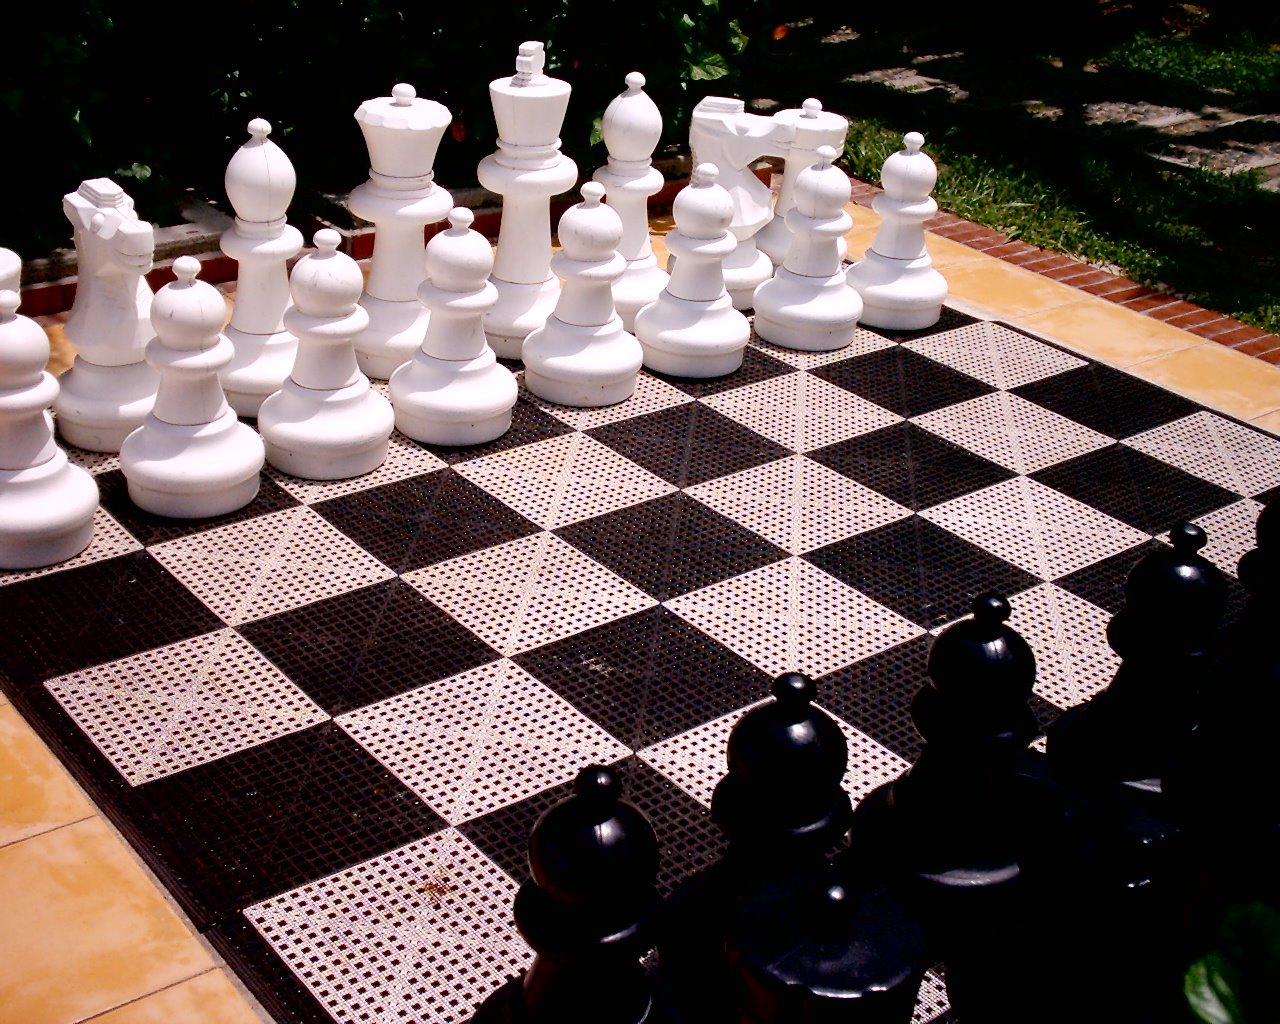 [ajedrez-gigante.jpg]